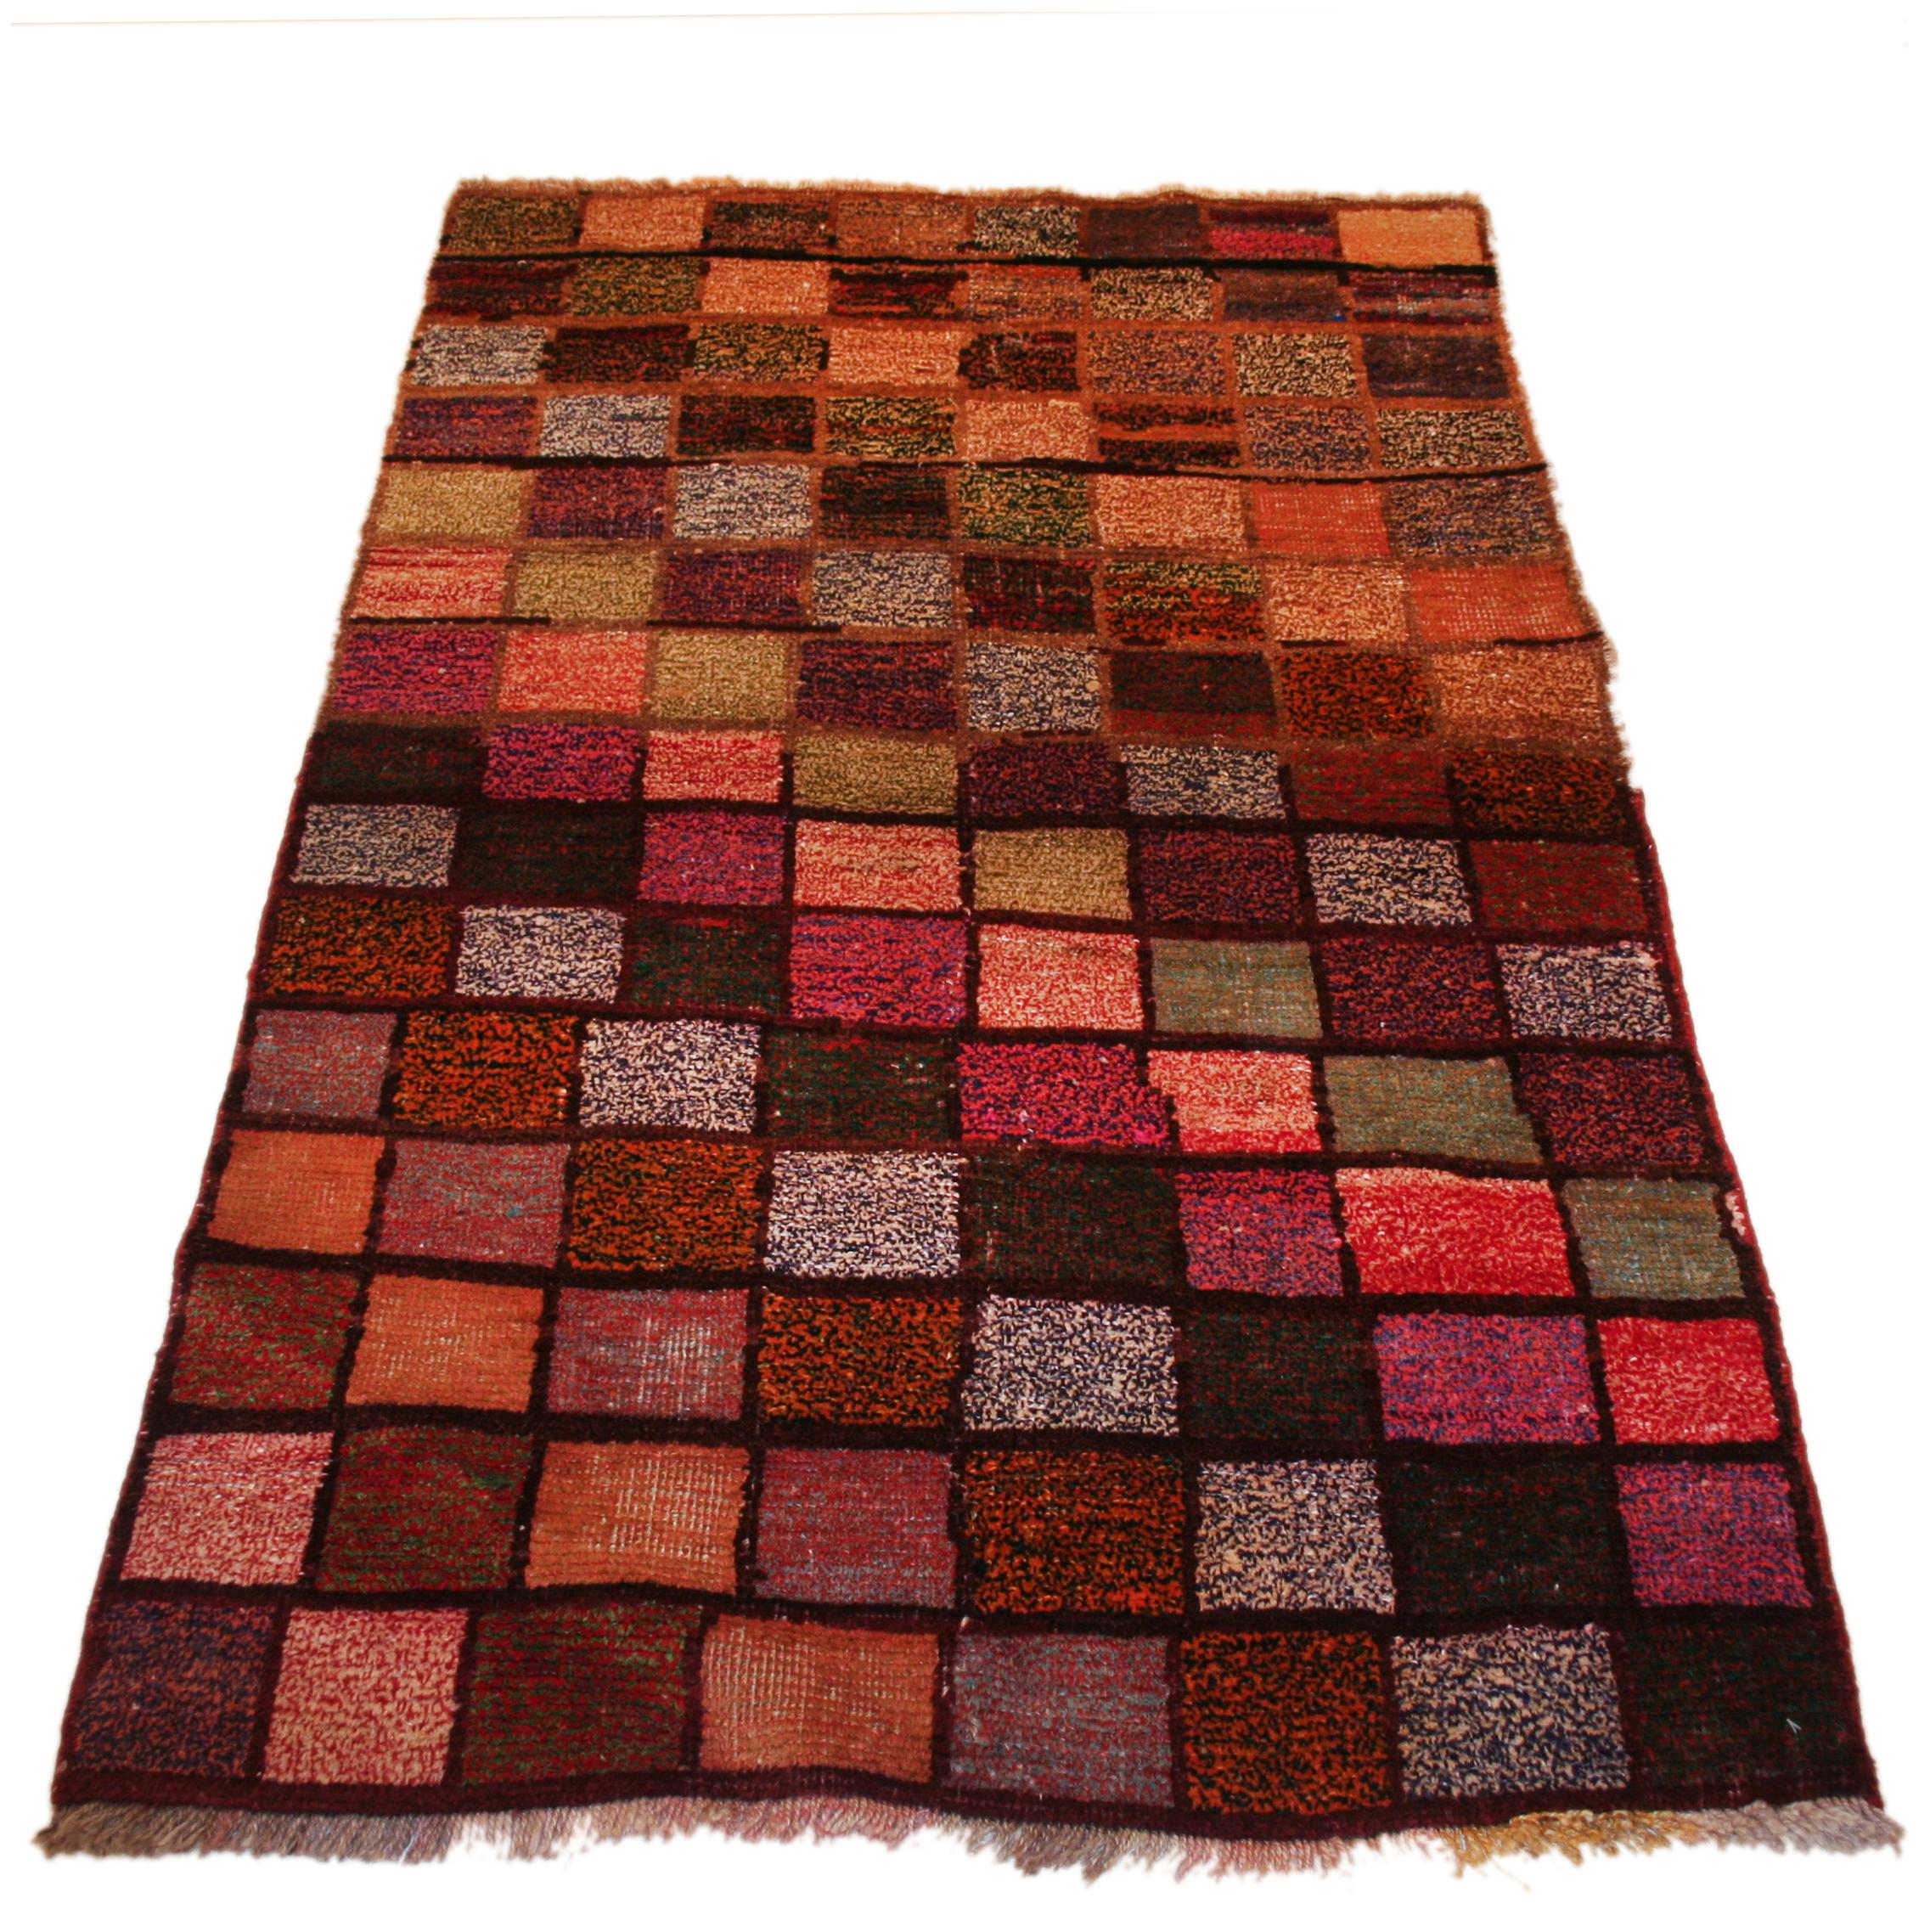 Les tapis Tulu représentent l'une des premières formes de tissage de poils nomades, généralement nouées avec un poil de taille moyenne car ils étaient destinés à être des tapis de chambre à coucher pour la tente. Les motifs sont généralement assez